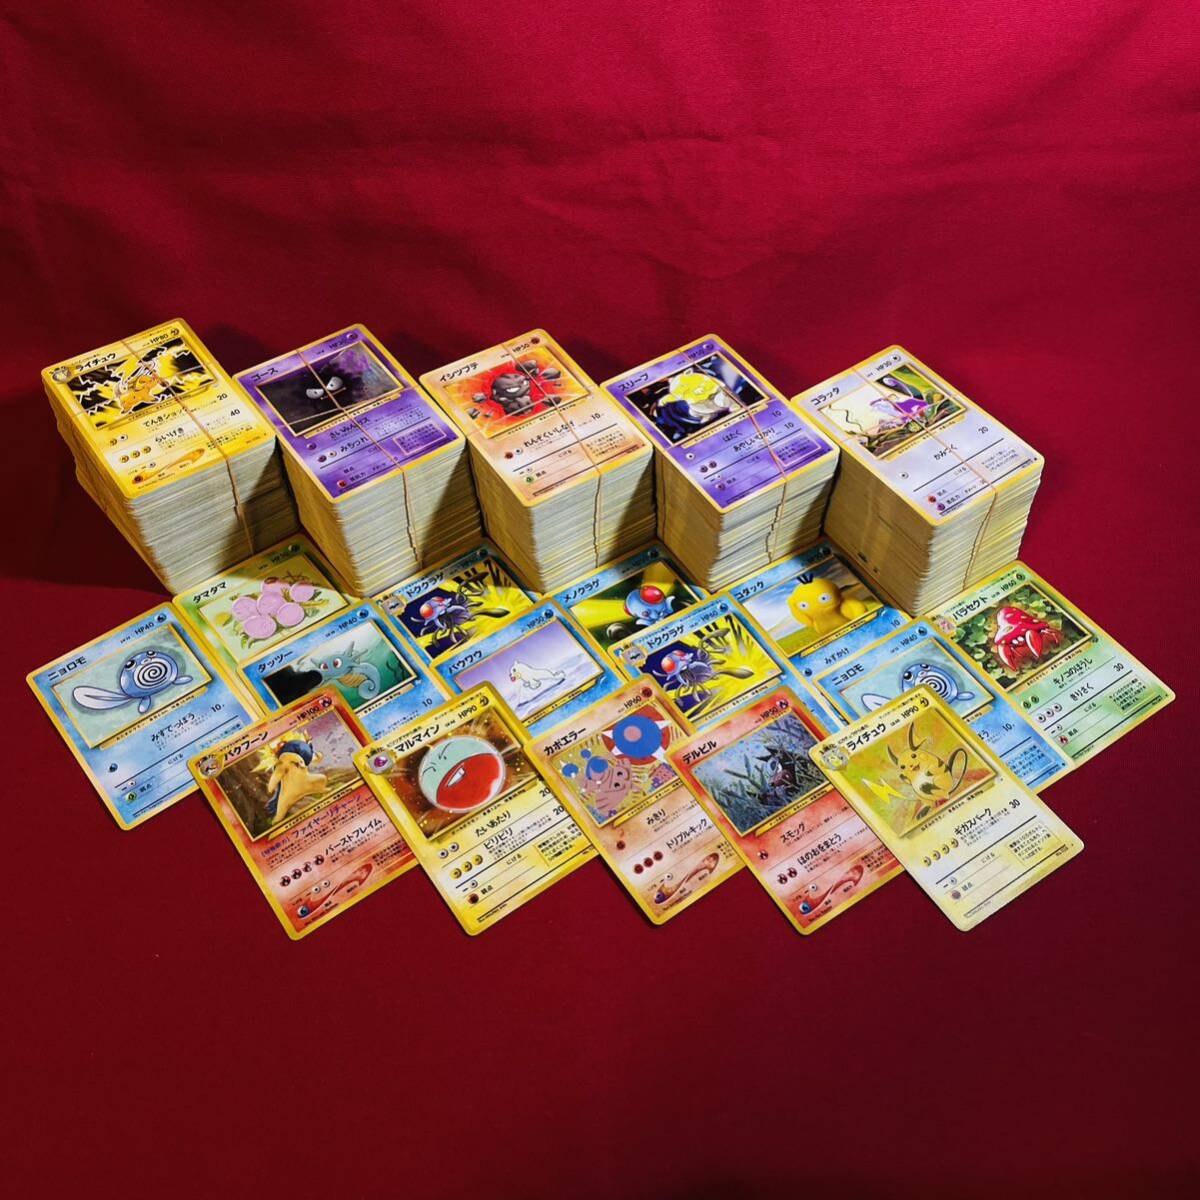 【まとめ売り】ポケモンカード 旧裏 約1000枚 まとめ売り Pokemon cards base set neo old back. の画像1